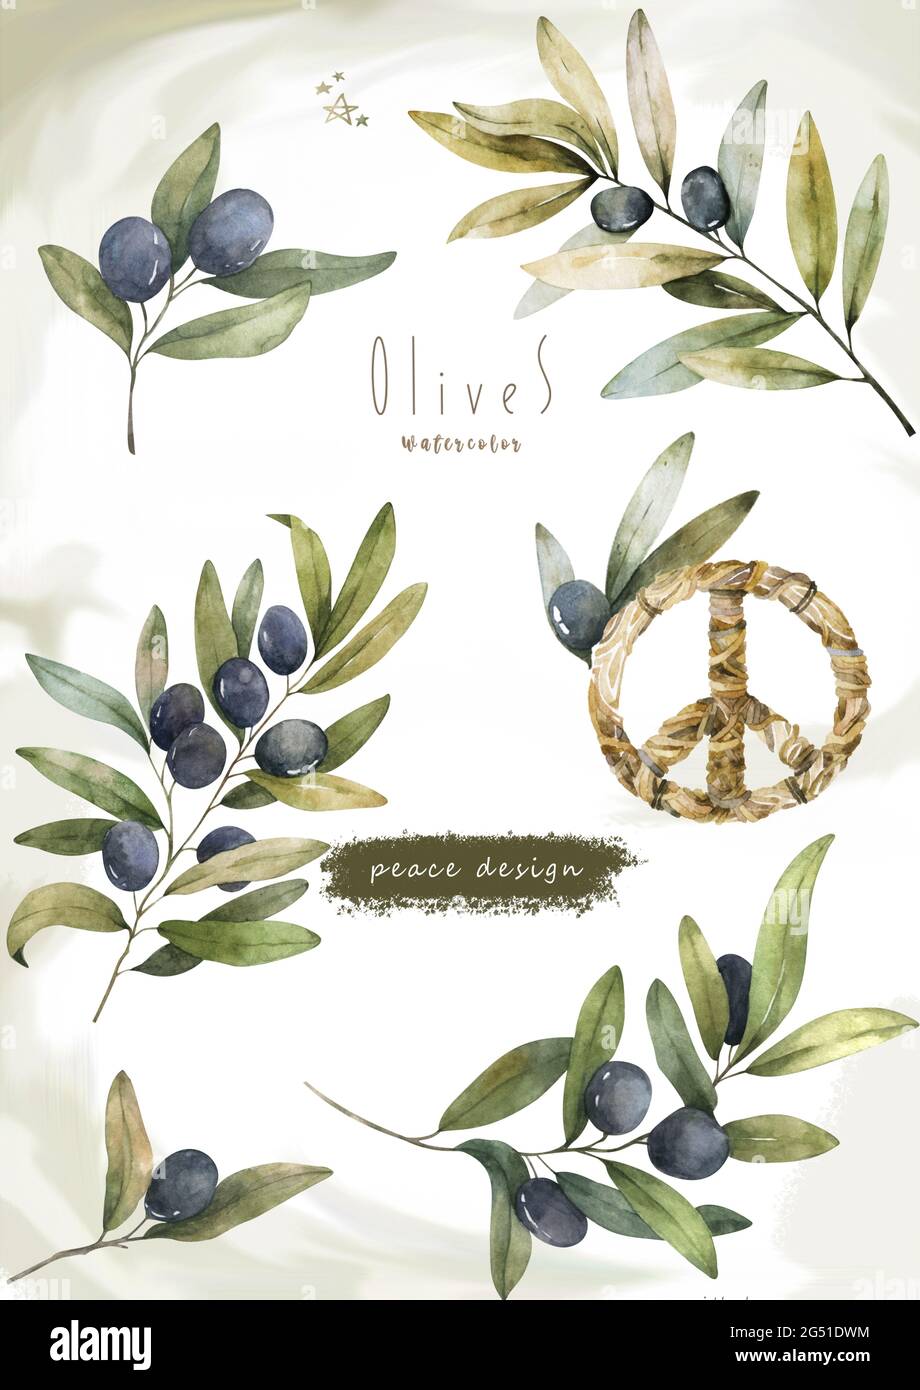 Acquerello annata settore di olive decorative. Set isolato di foglie d'oliva disegnate a mano Foto Stock